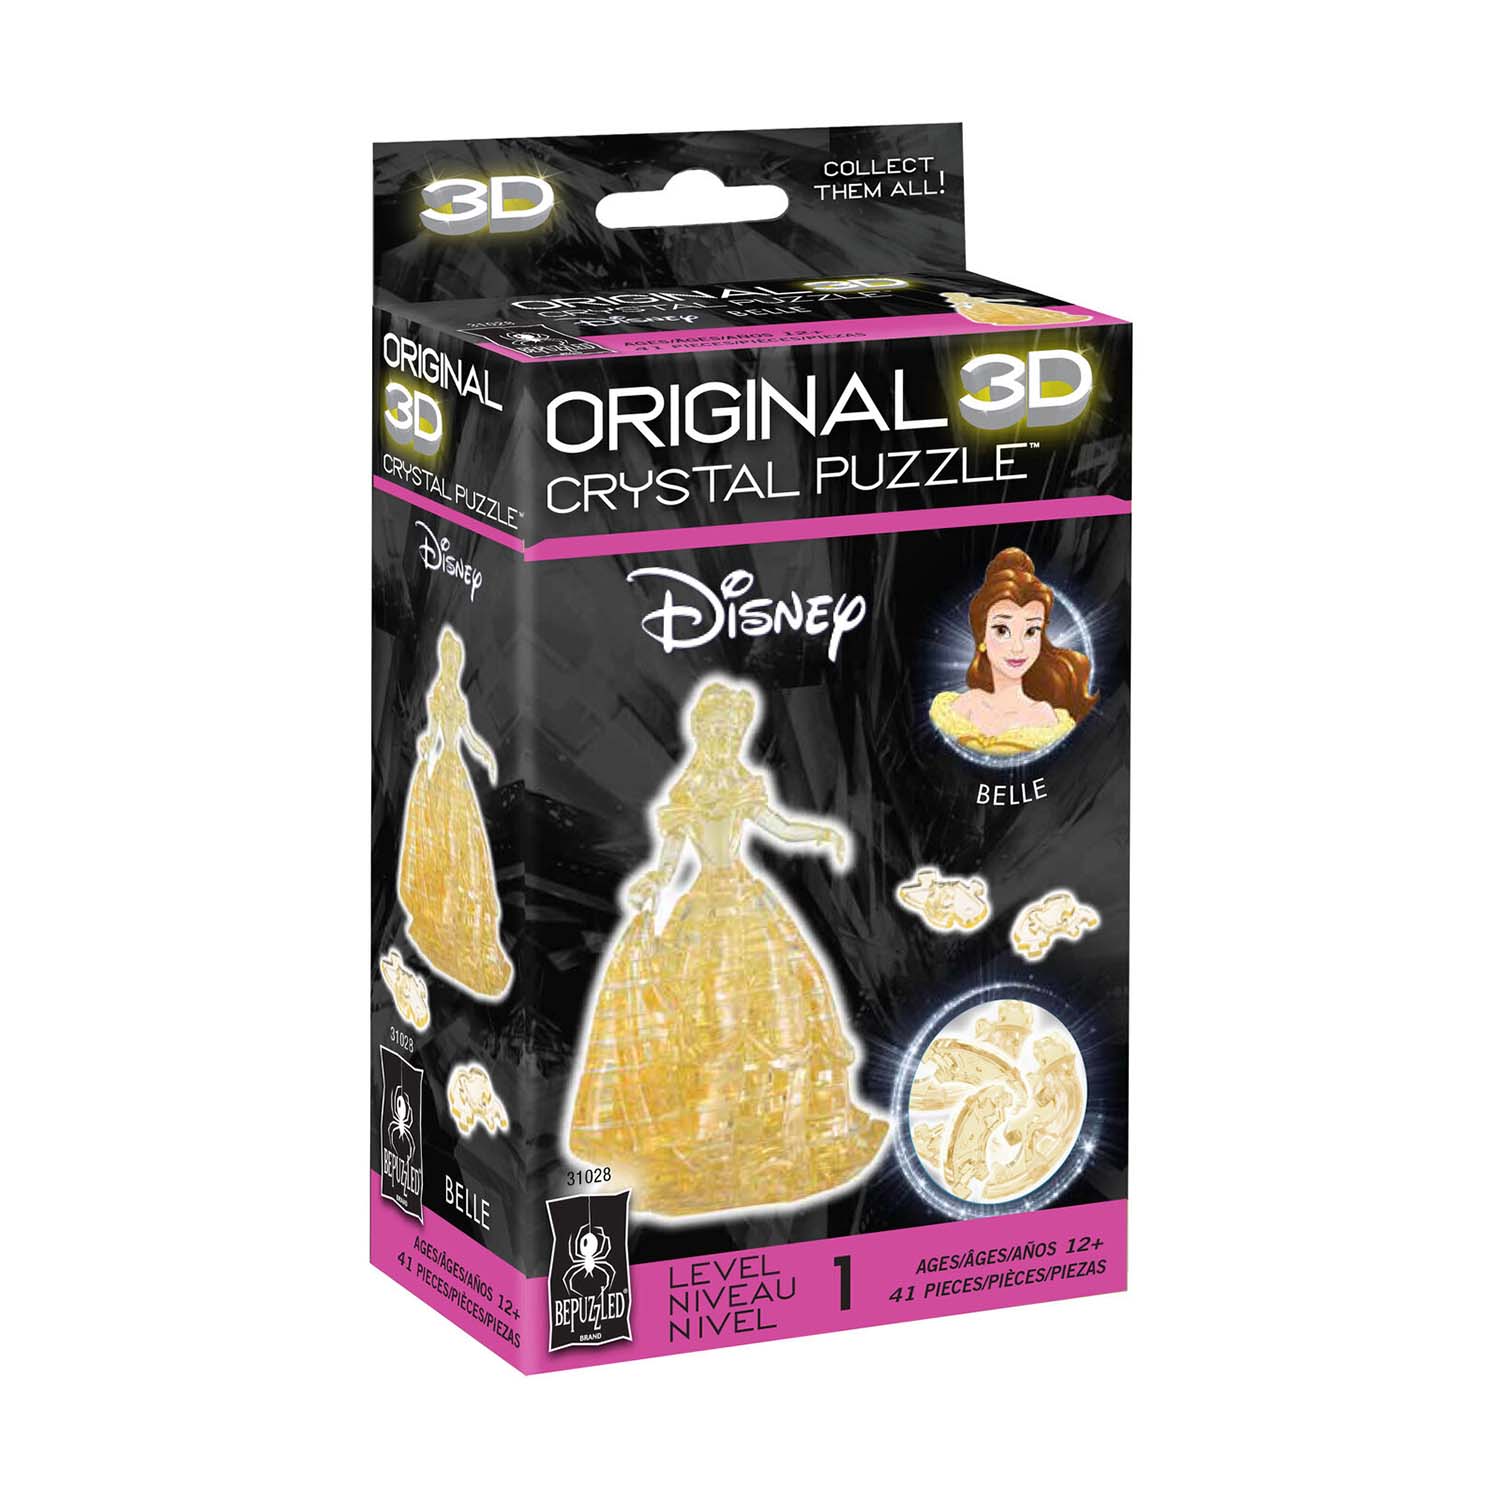 Belle Original 3D Crystal Puzzle